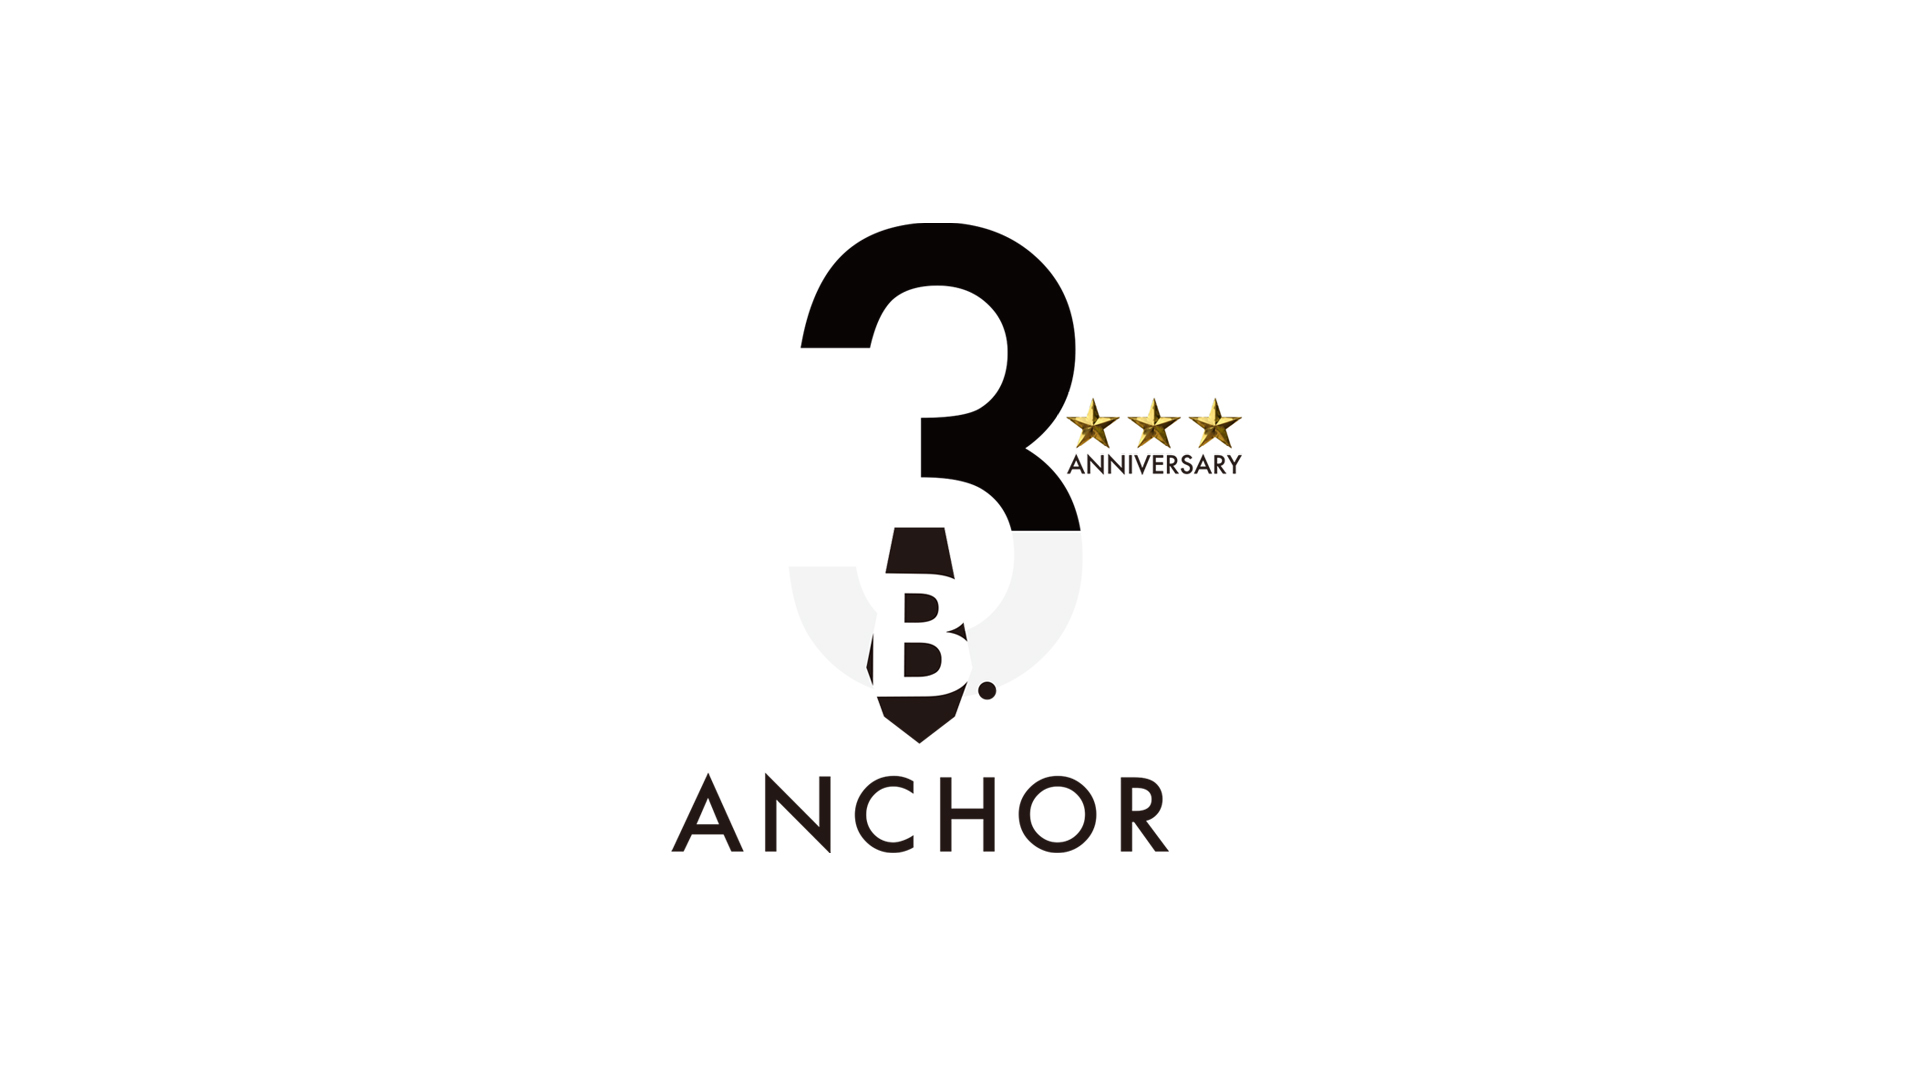 B.ANCHORA株式会社の3周年記念ロゴマーク